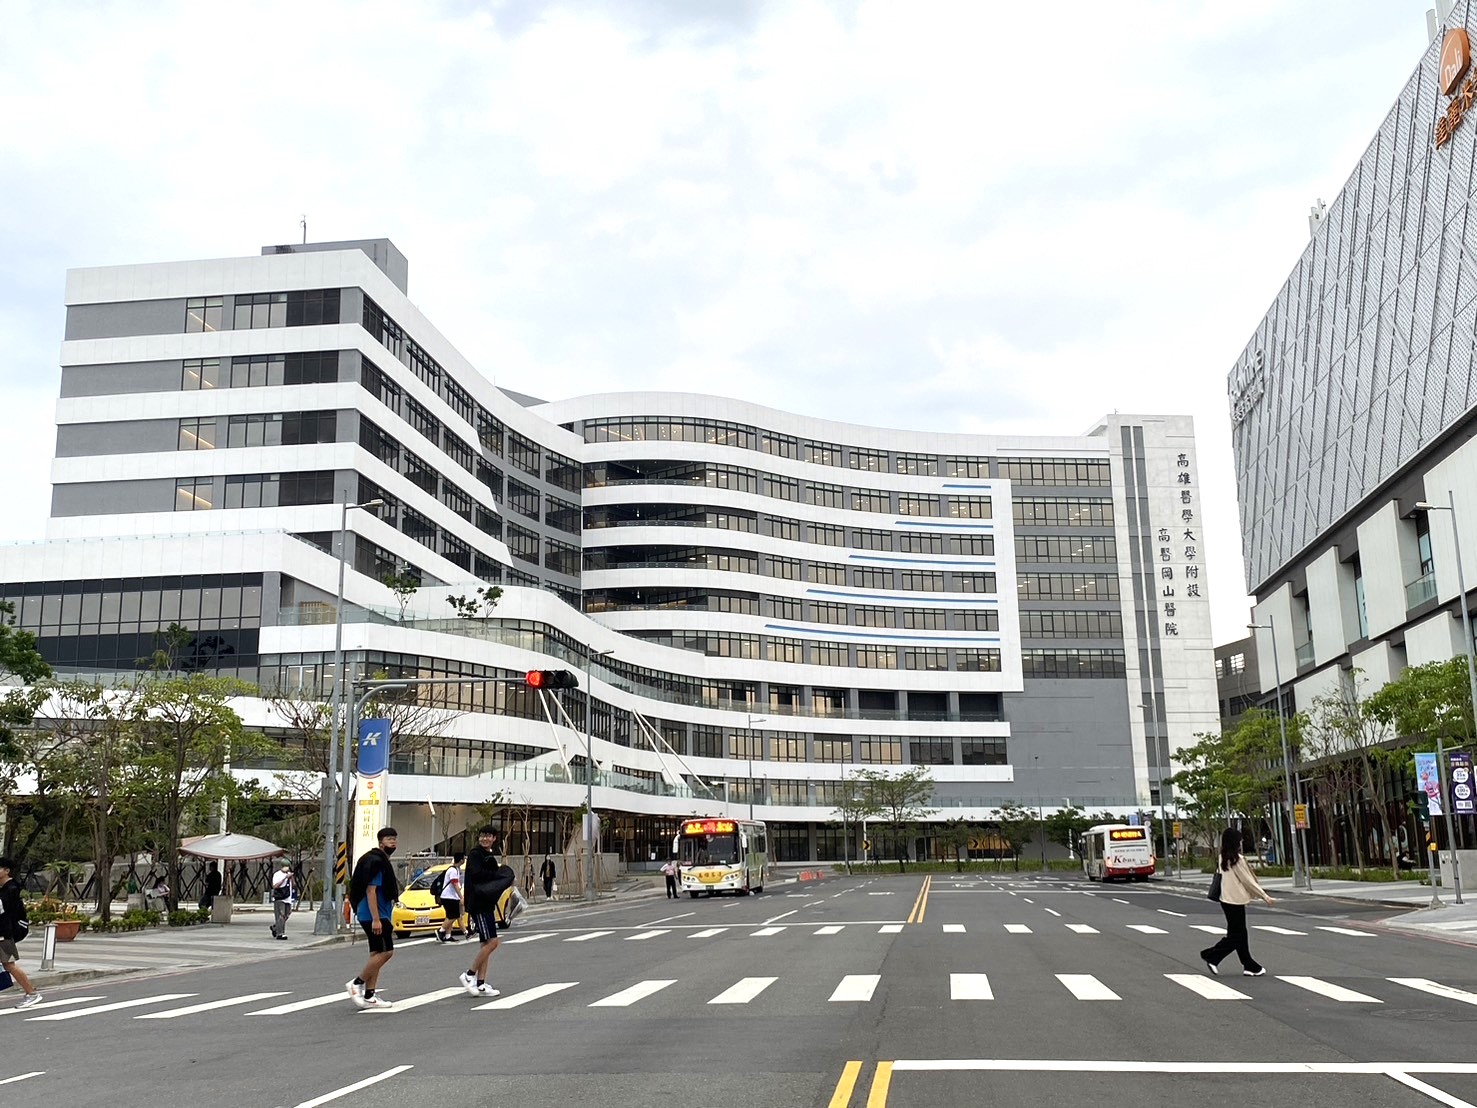 高醫岡山醫院四月展開試營運  提供北高雄地區民眾最完善的醫療照護